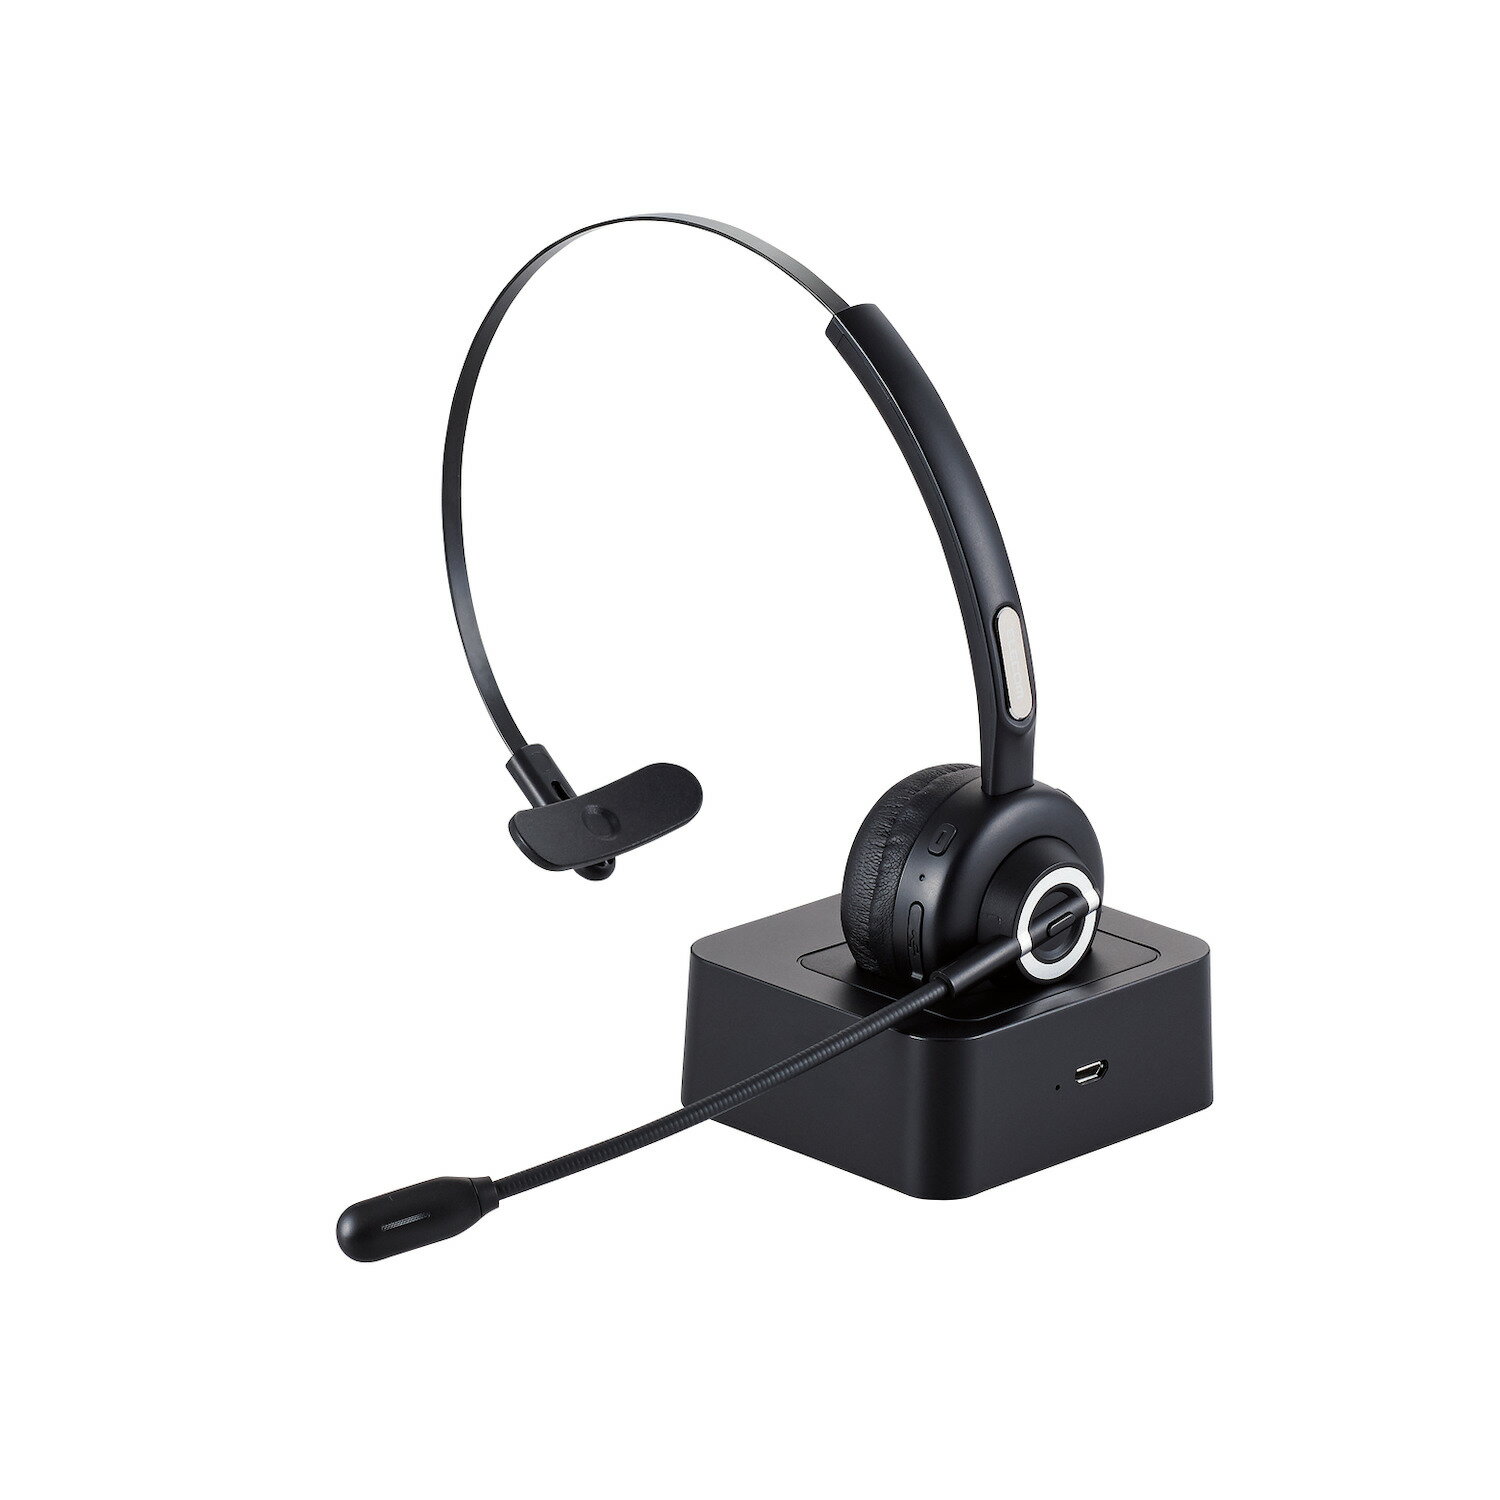 ワイヤレス ヘッドセット 片耳 Bluetooth マイクキ オーバーヘッドタイプ 充電スタンドキ ブラック(LBT-HSOH14BK) メーカー品